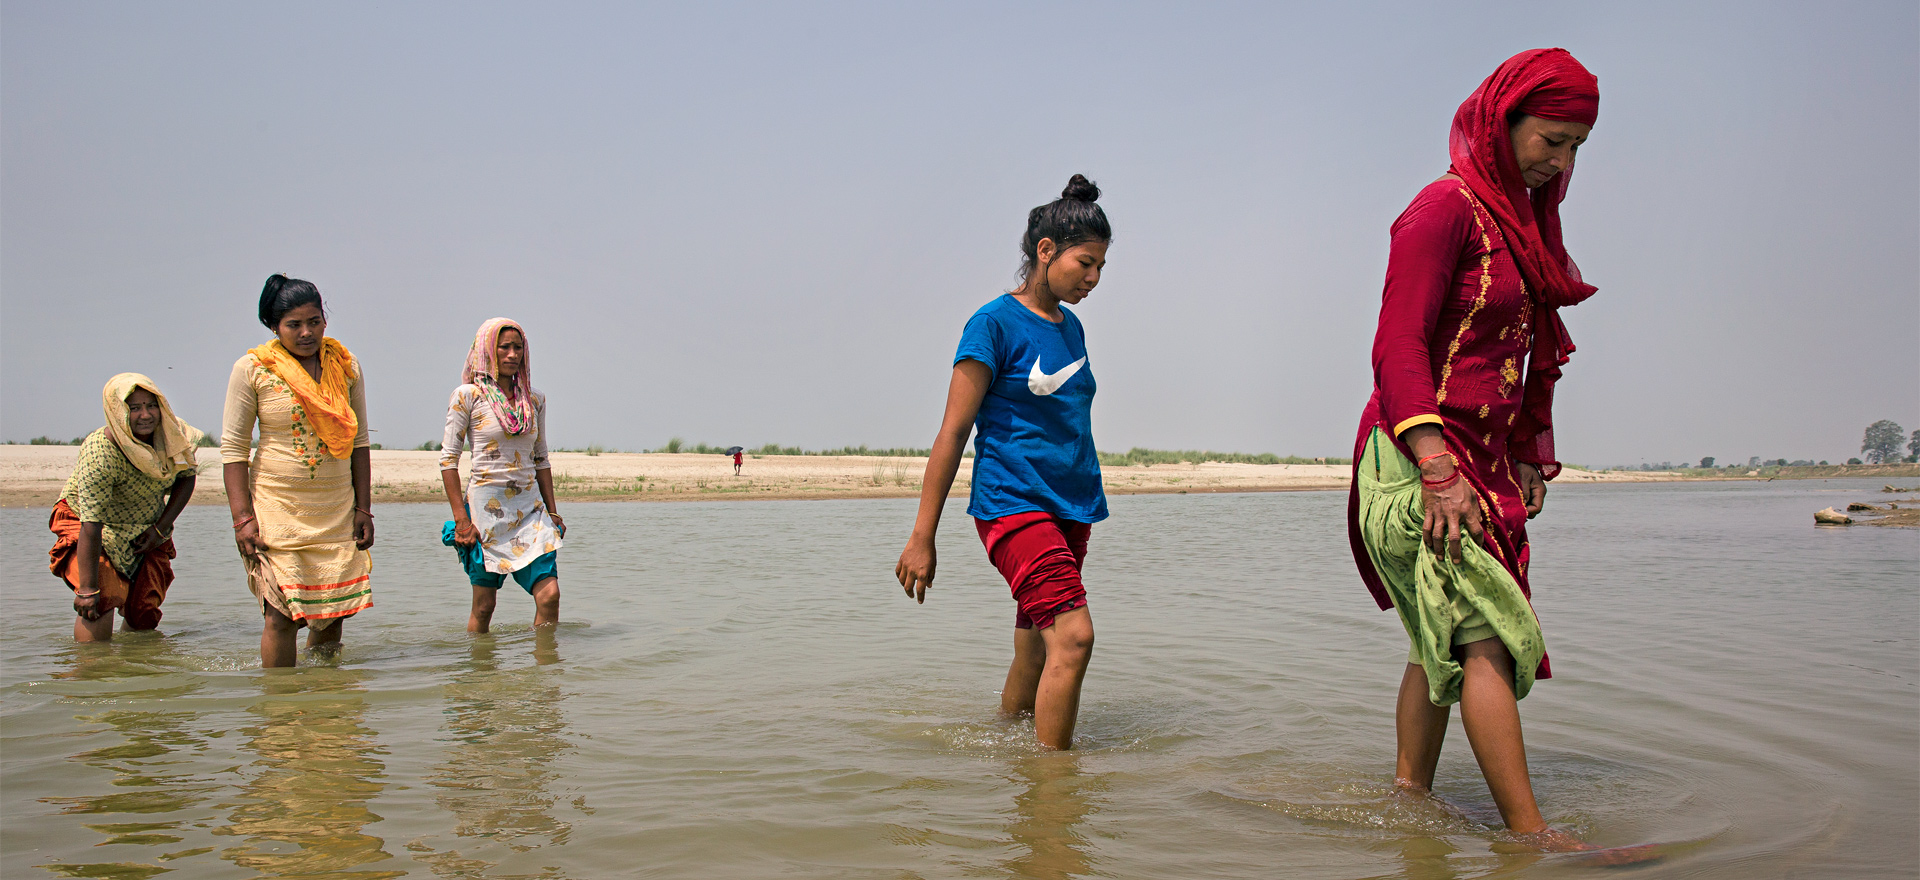 Viisi naista kahlaa vedessä Nepalissa. Kuva: Uma Bista